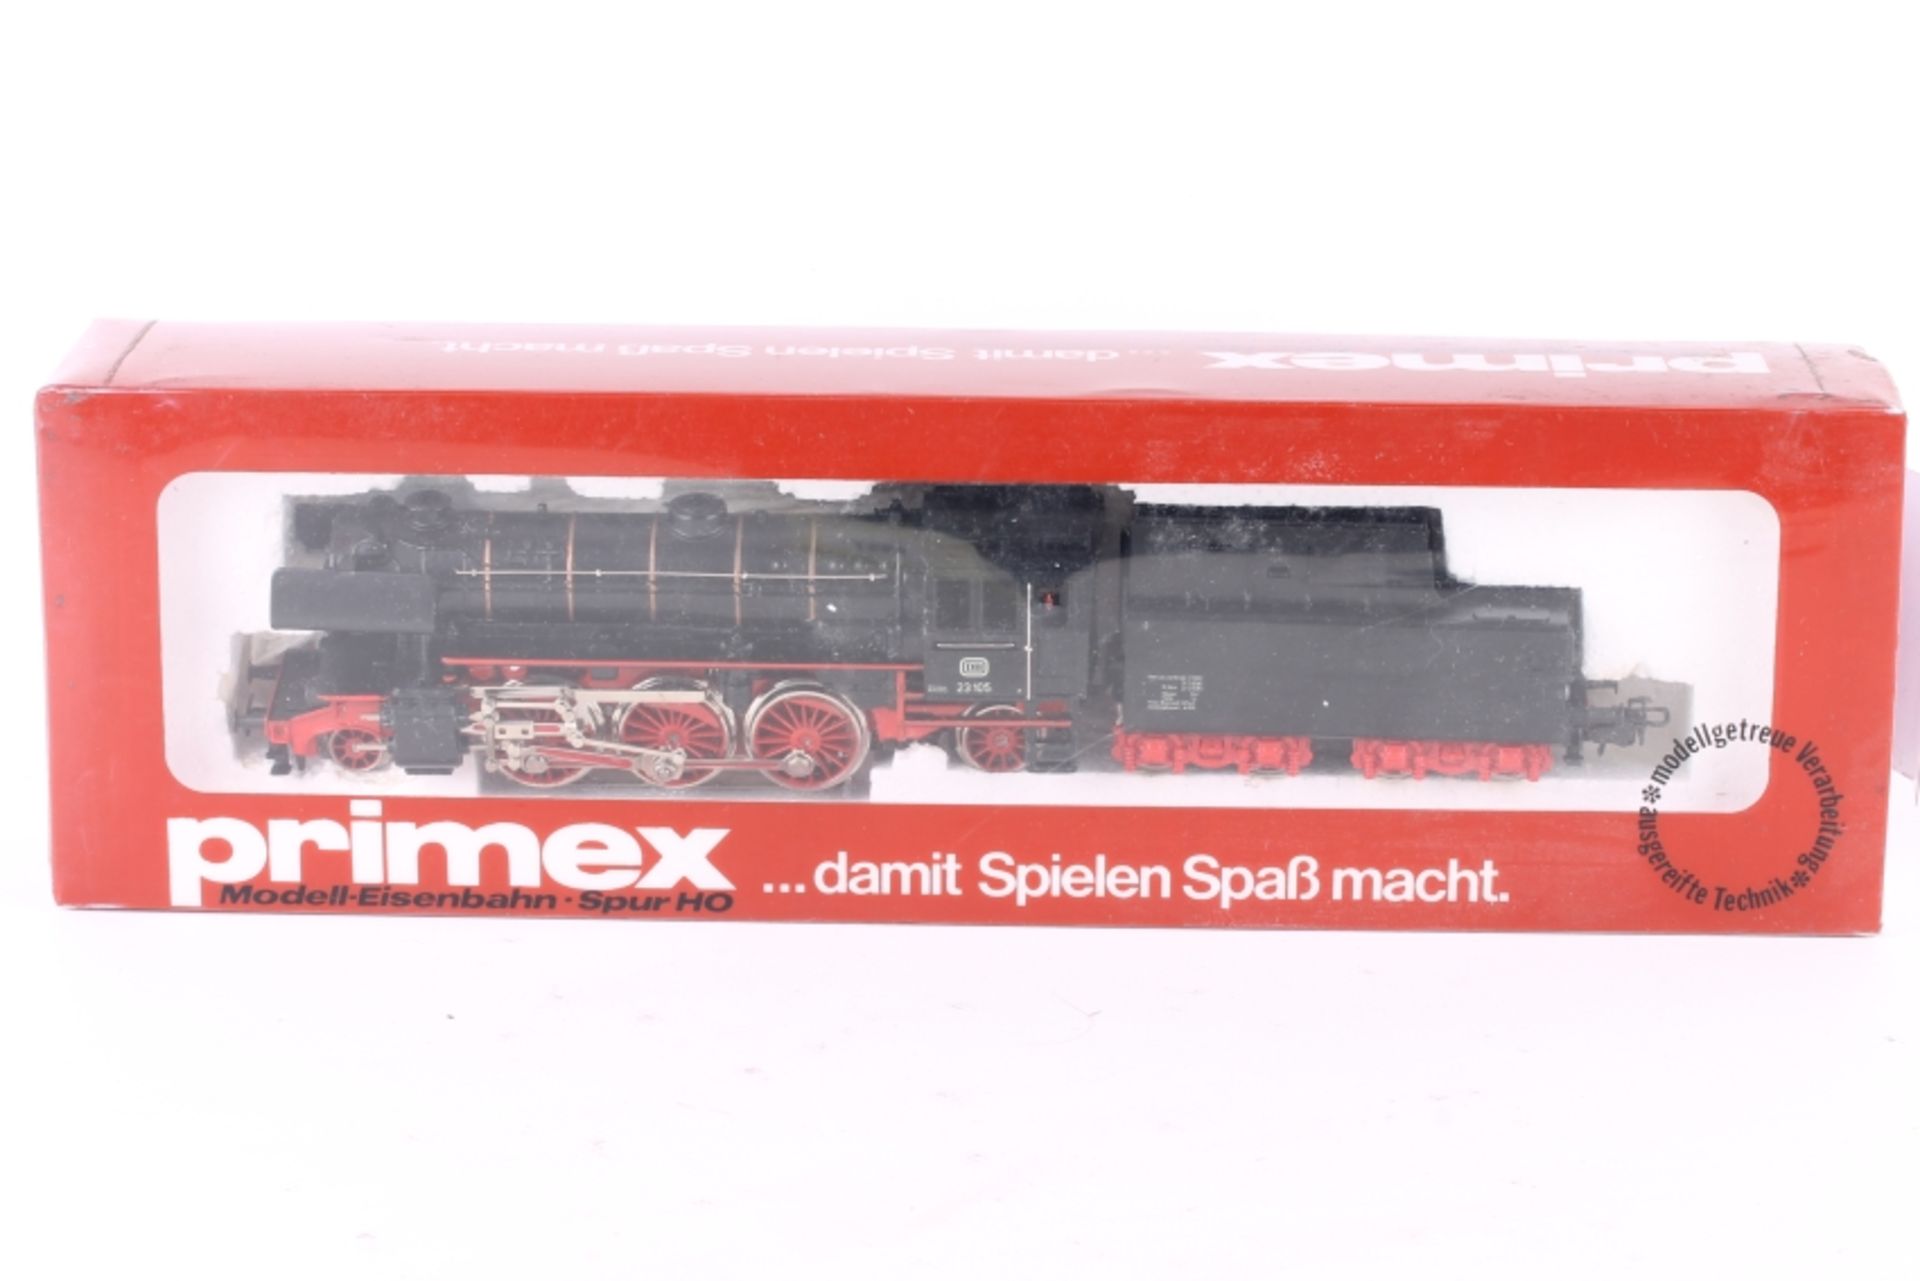 Primex 3191, Dampflok "23 105" der DB Primex 3191, Dampflok "23 105" der DB, Führerhaus geschlossen,